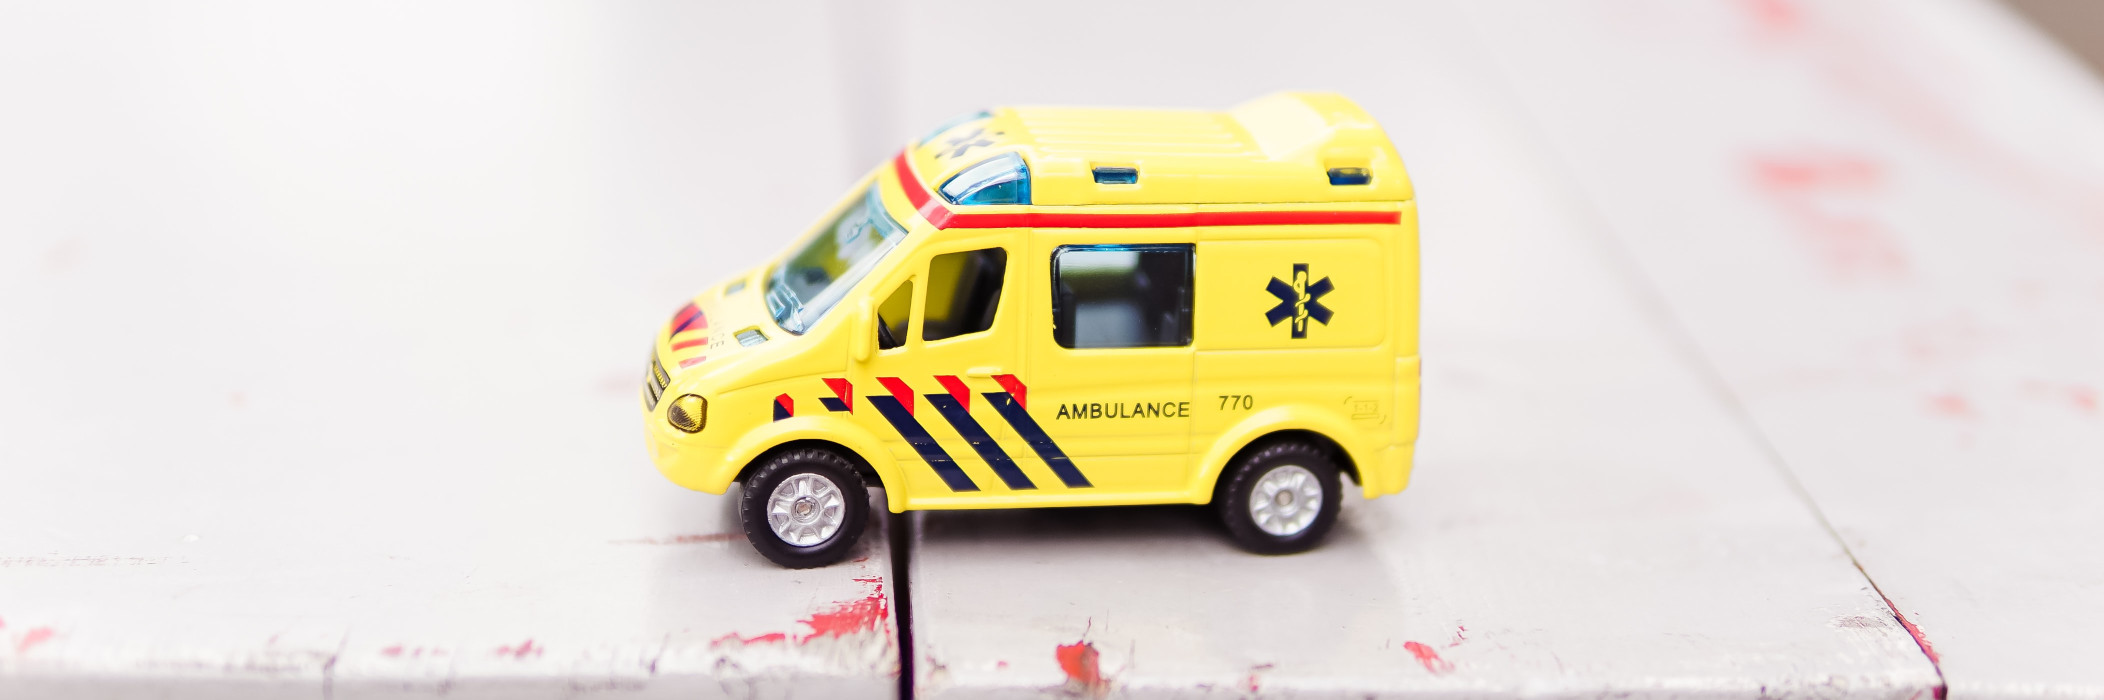 Toy Ambulance Credit Zhen Hu